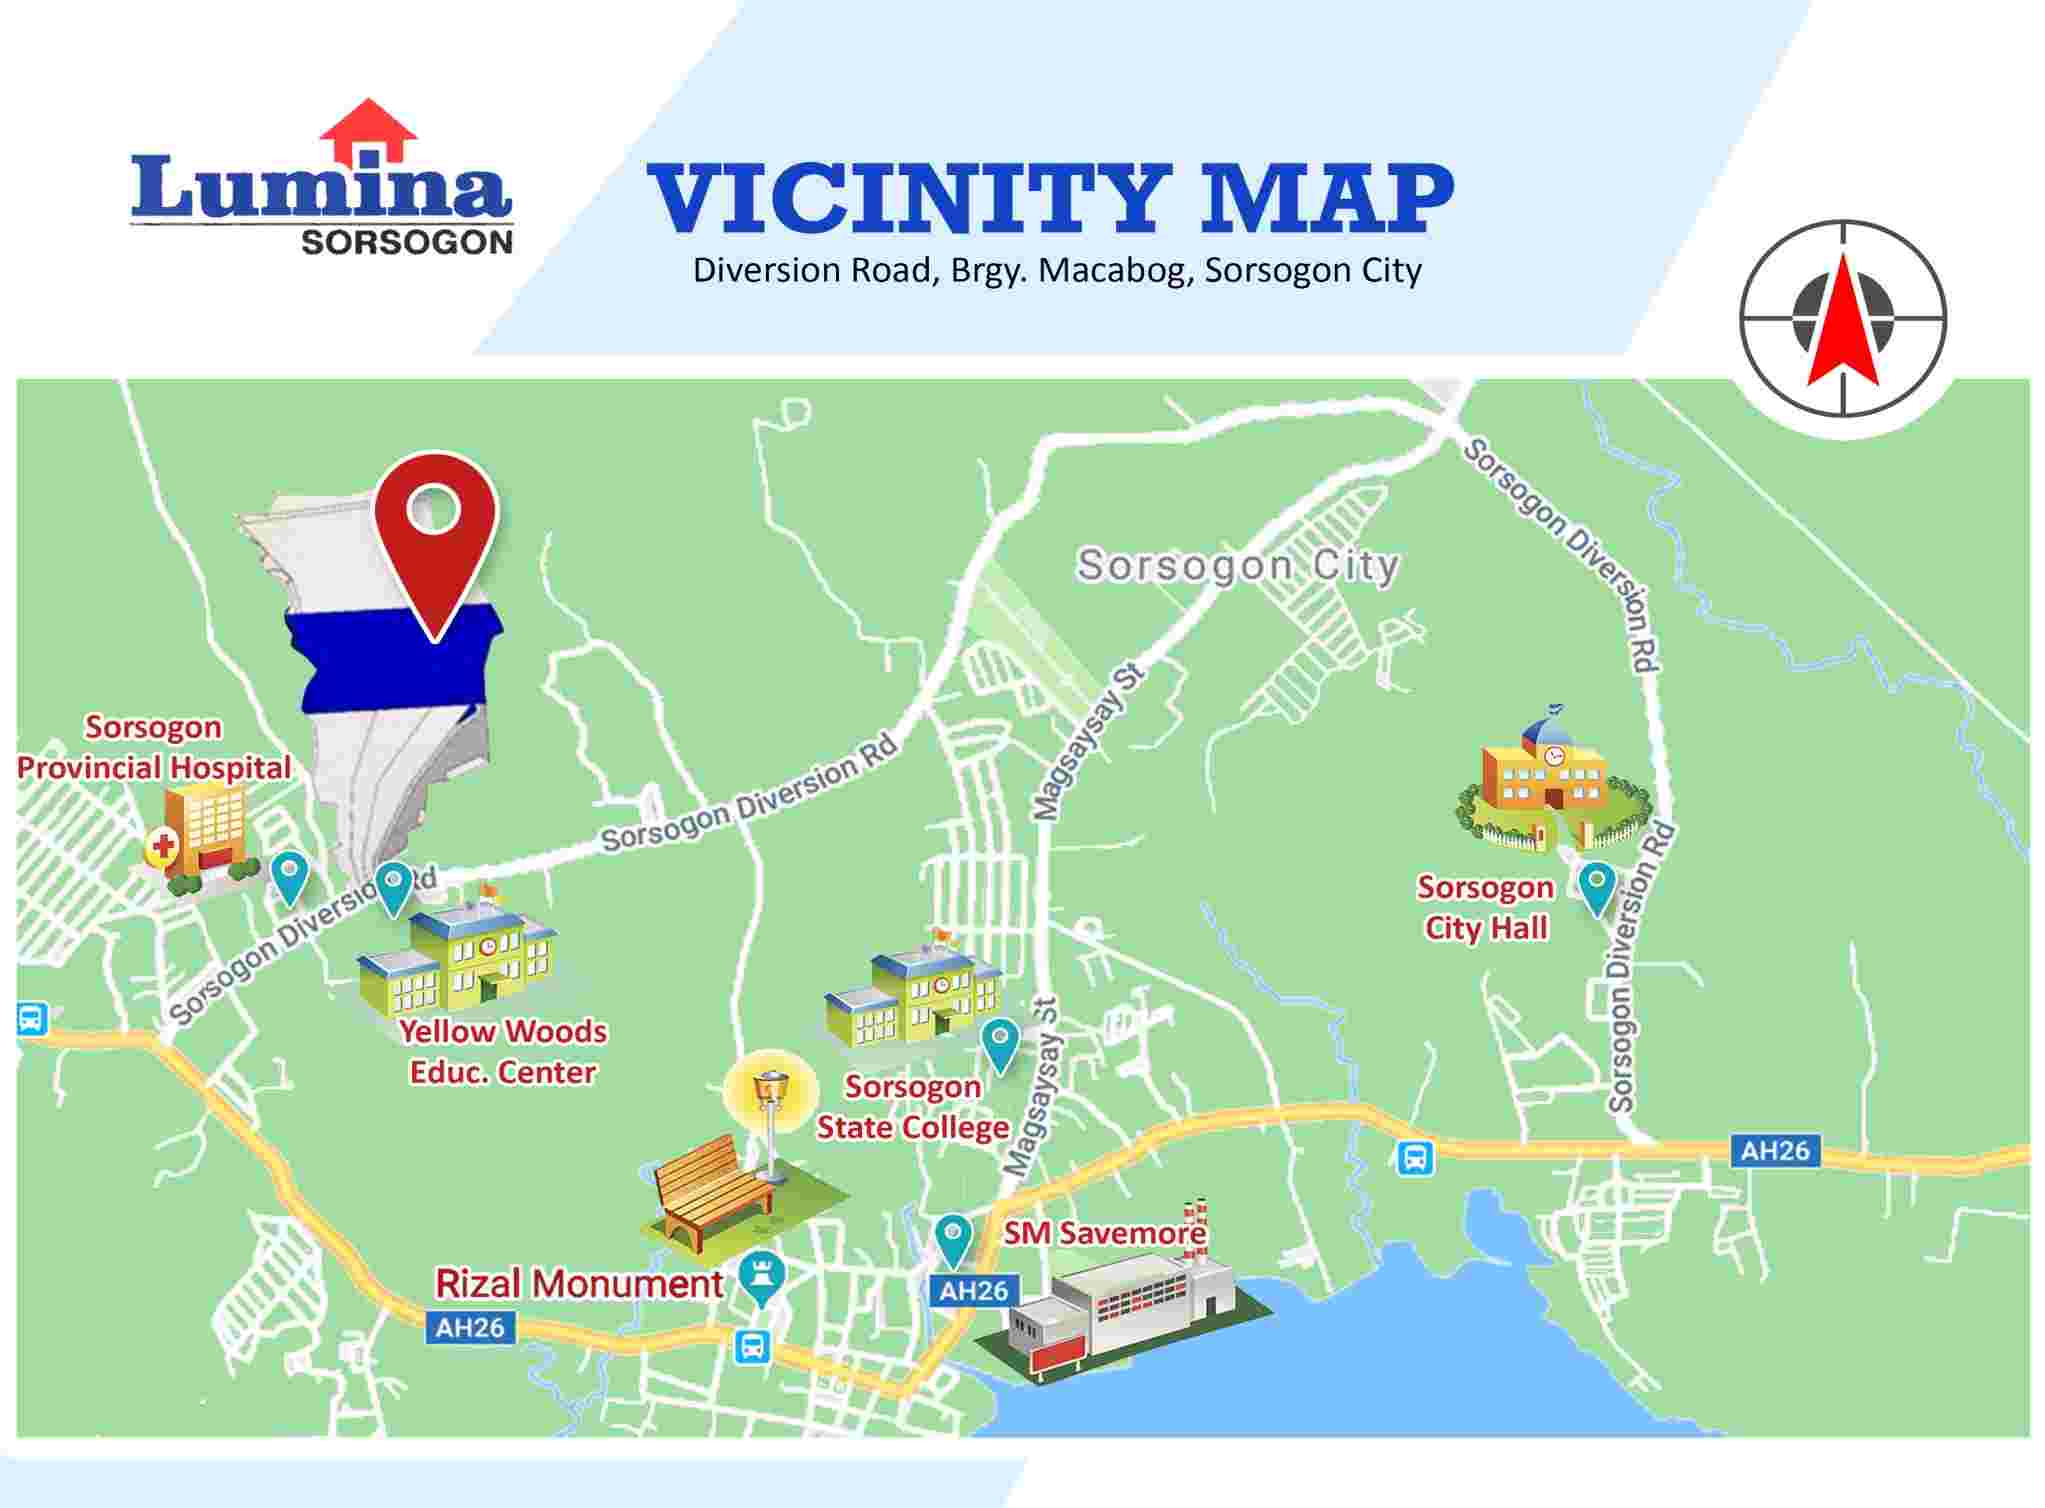 Vicinity-Map-1652173633.jpeg